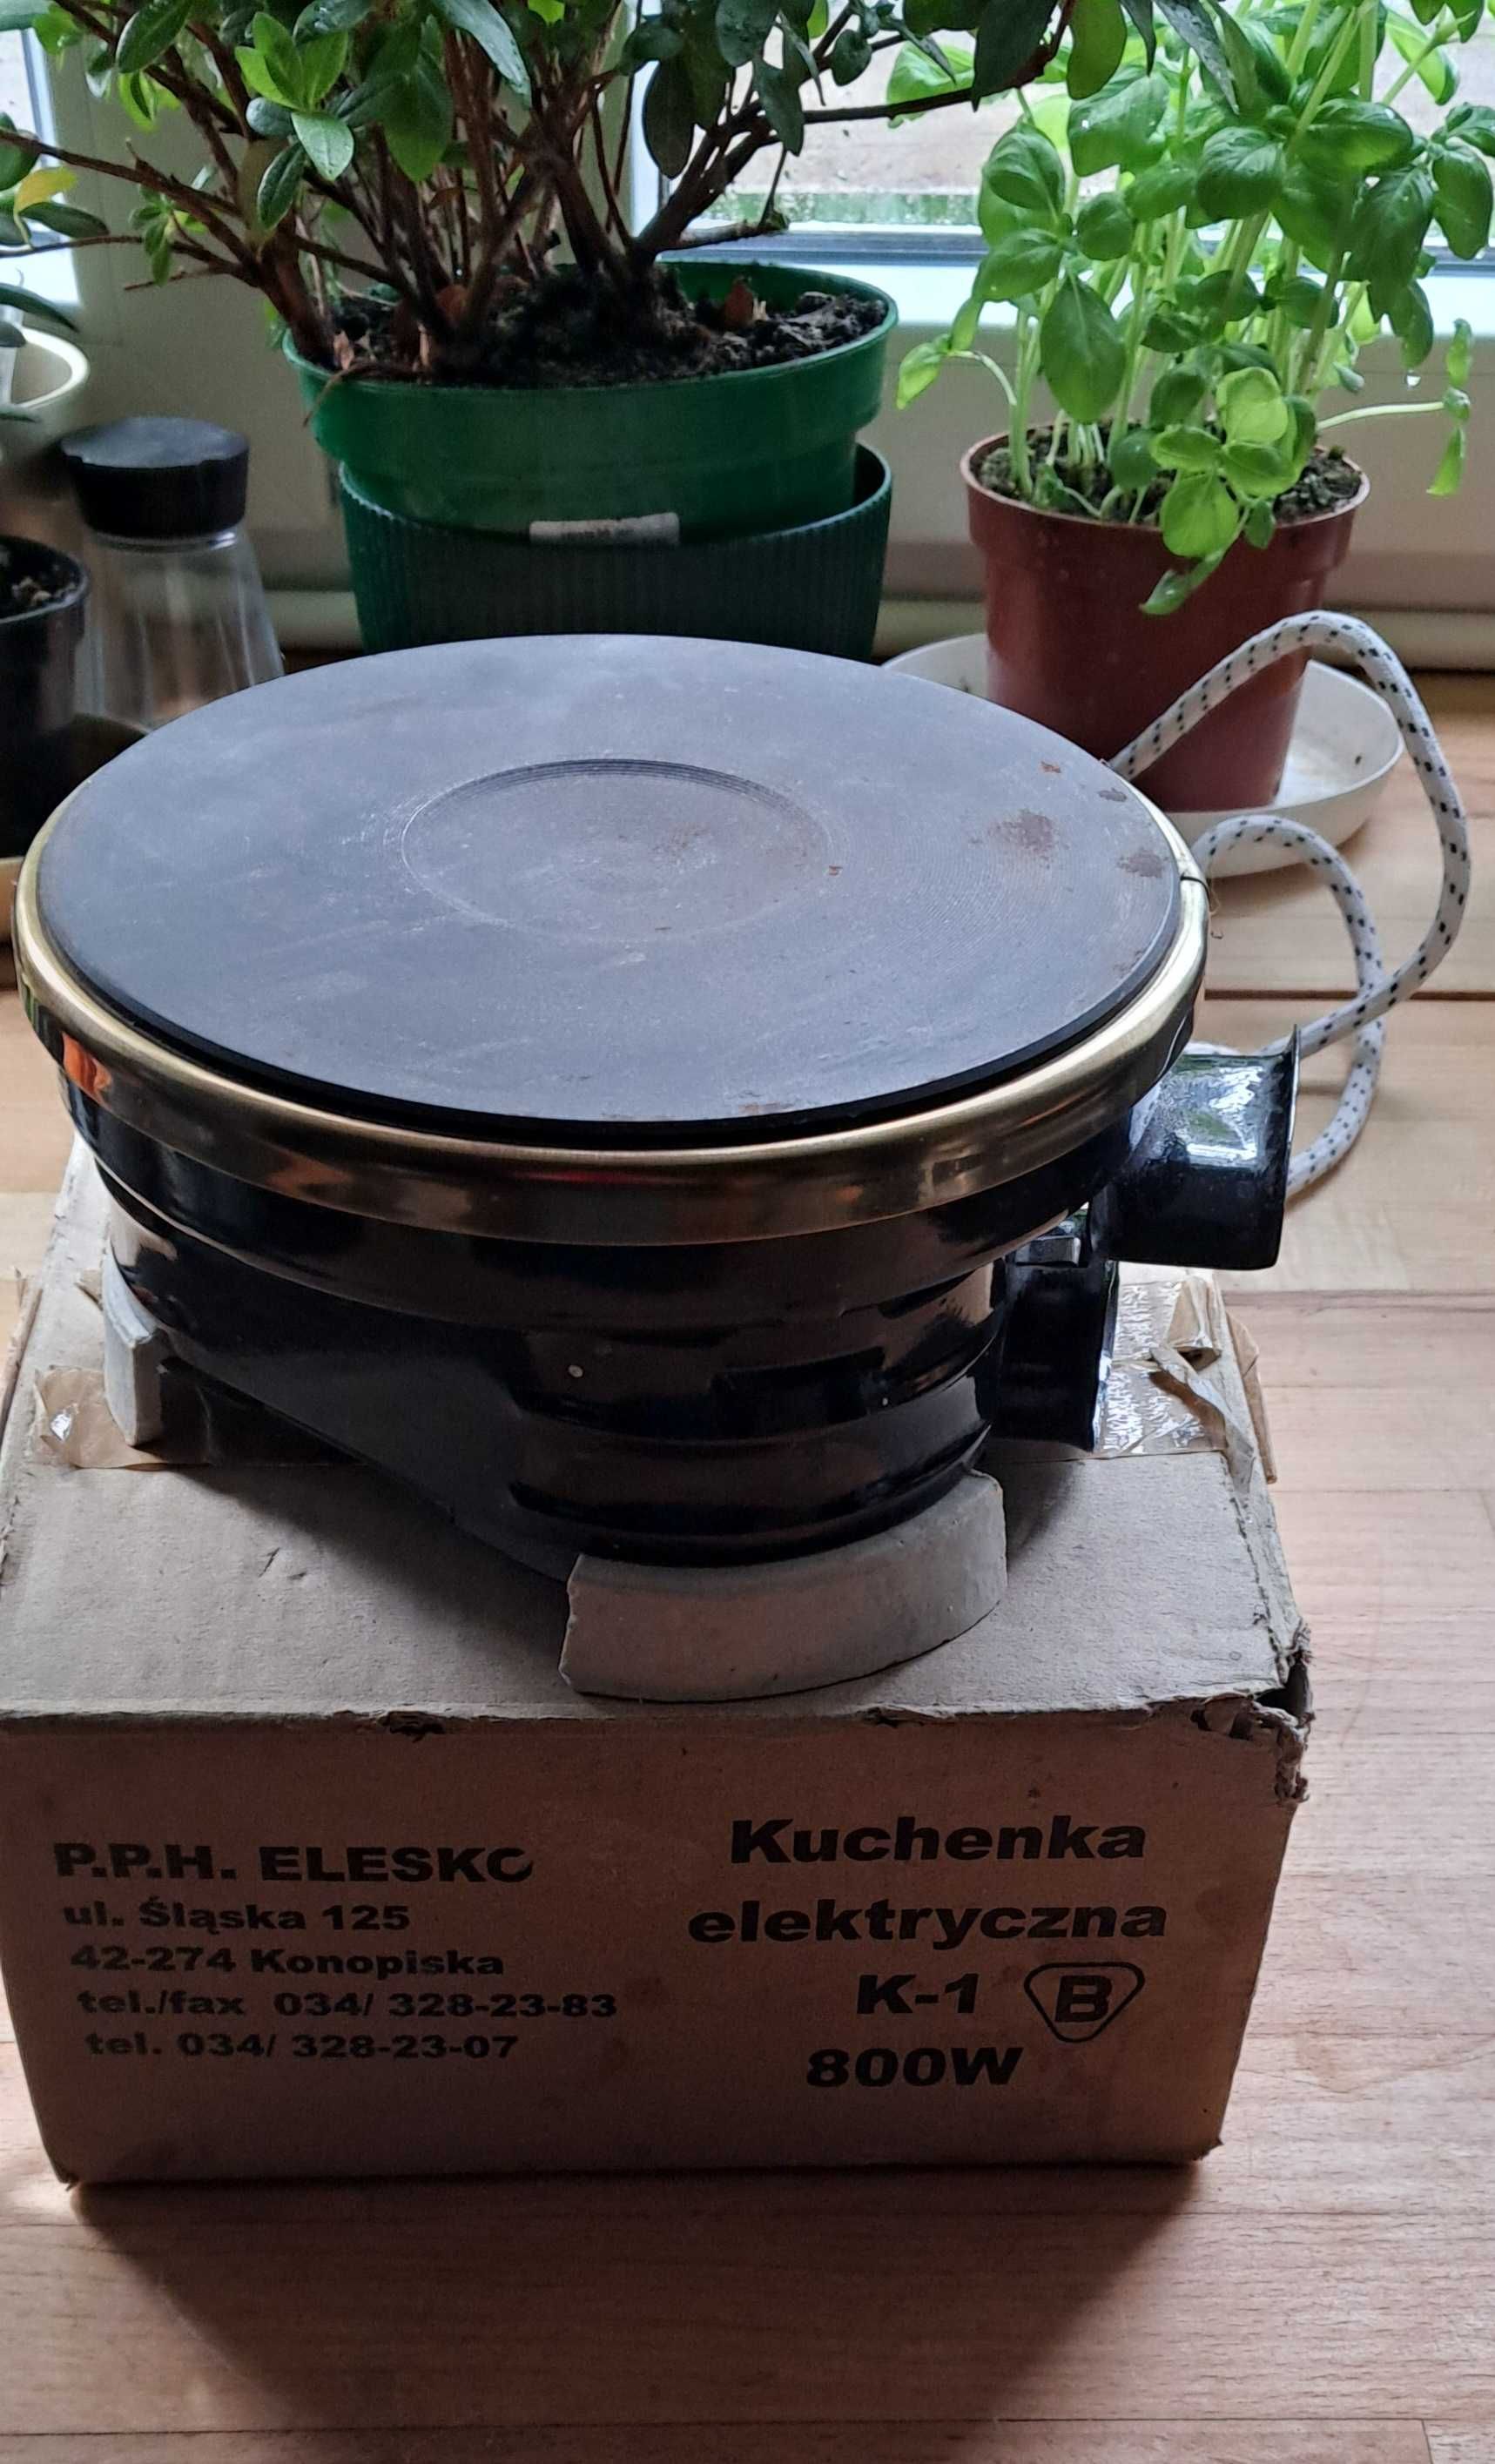 Jednopalnikowa kuchenka elektryczna K-1 800W!